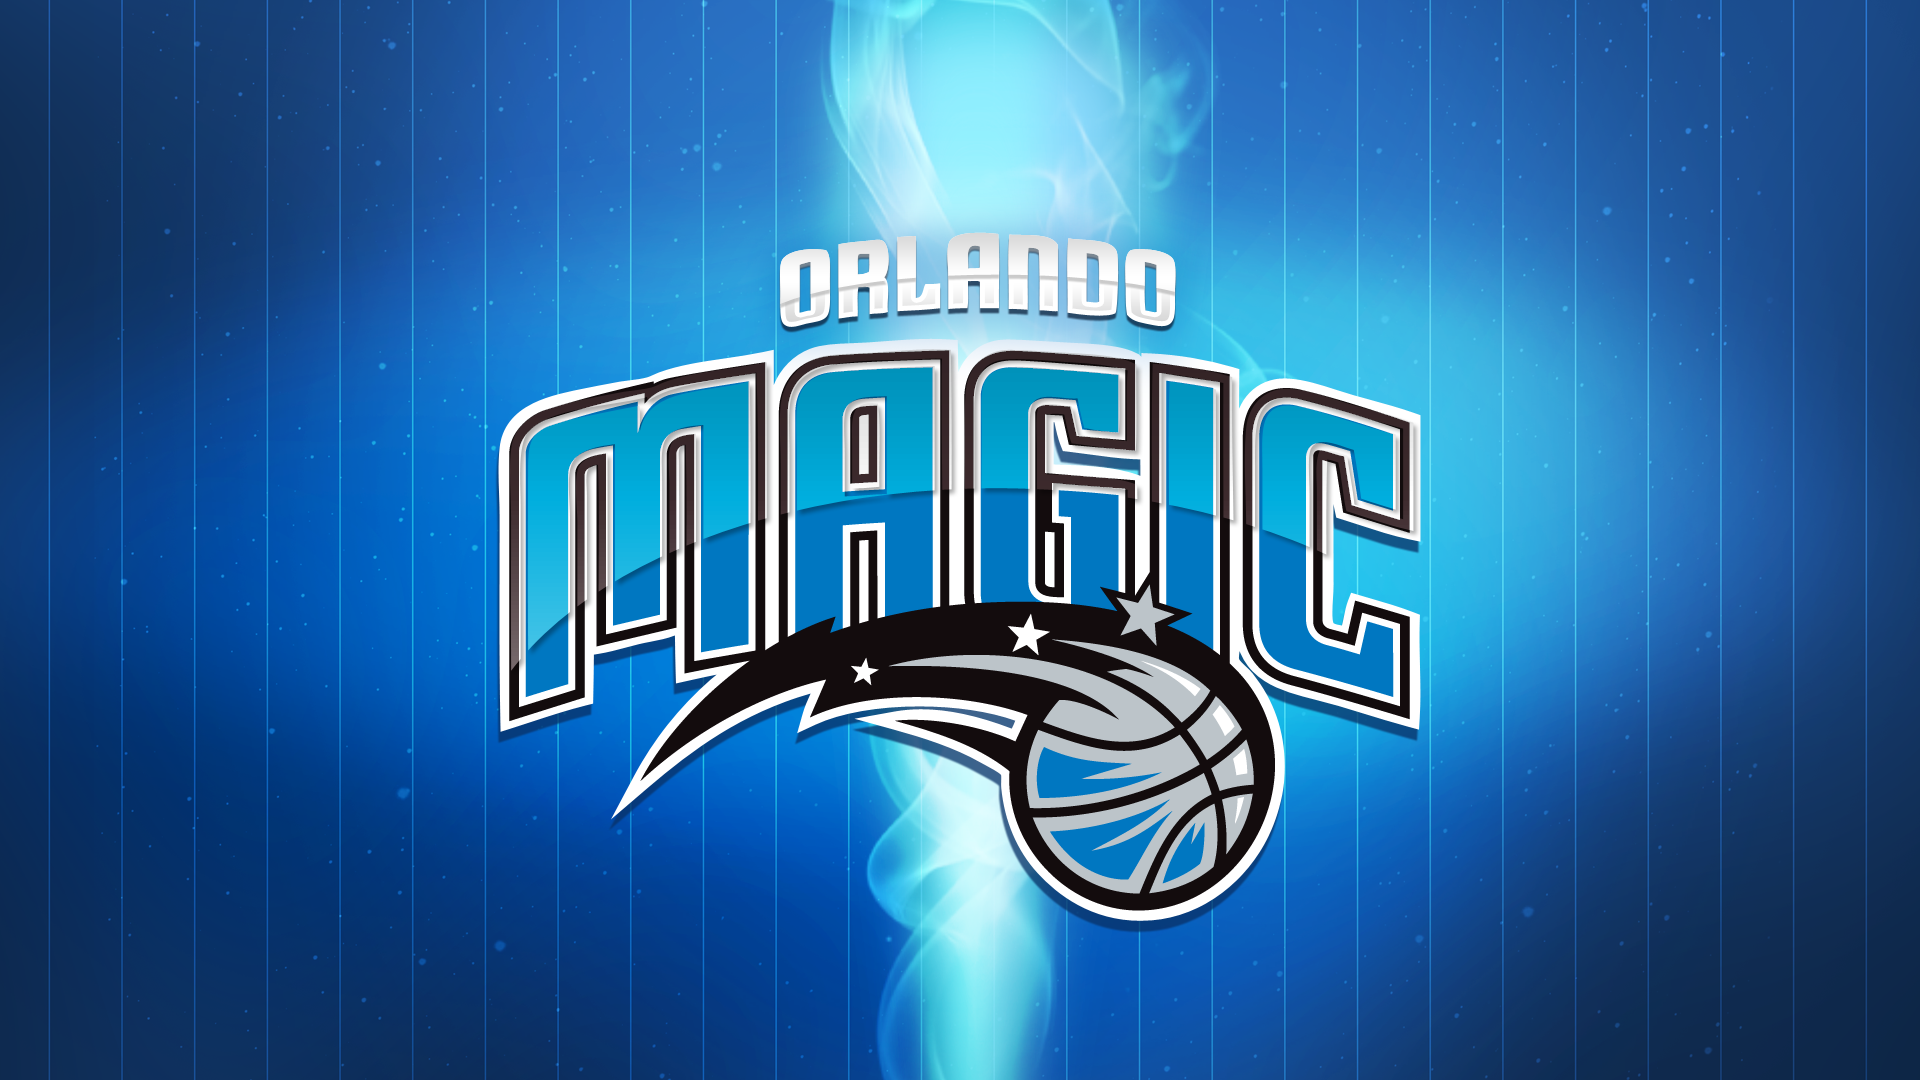 ORLANDO MAGIC nba basketball wallpaper 1920x1080 227839